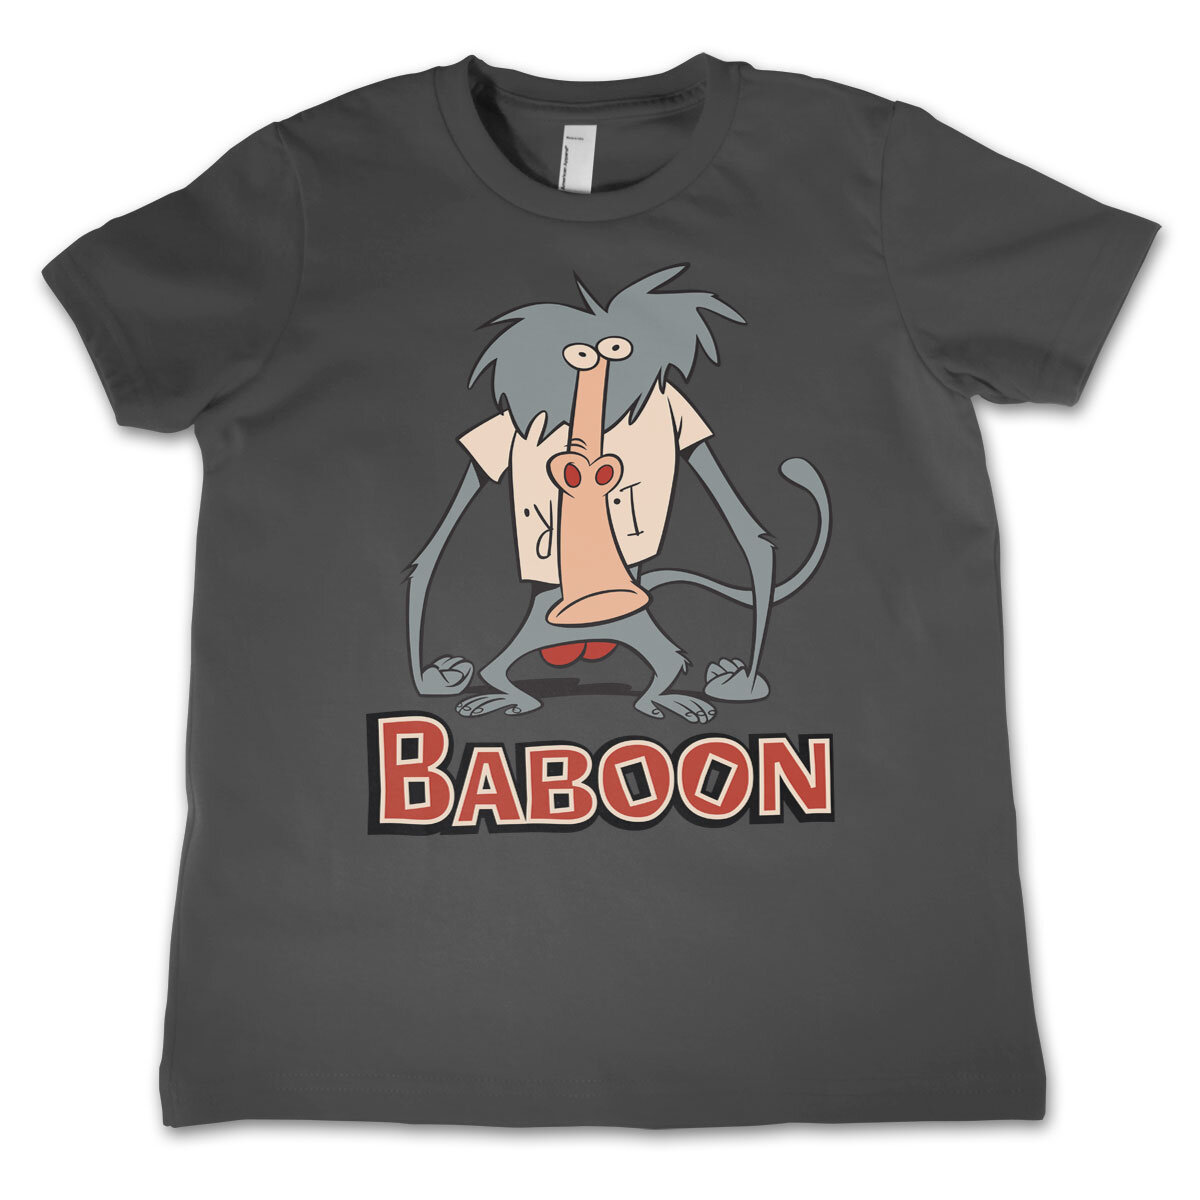 I Am Weasel - Baboon Kids T-Shirt